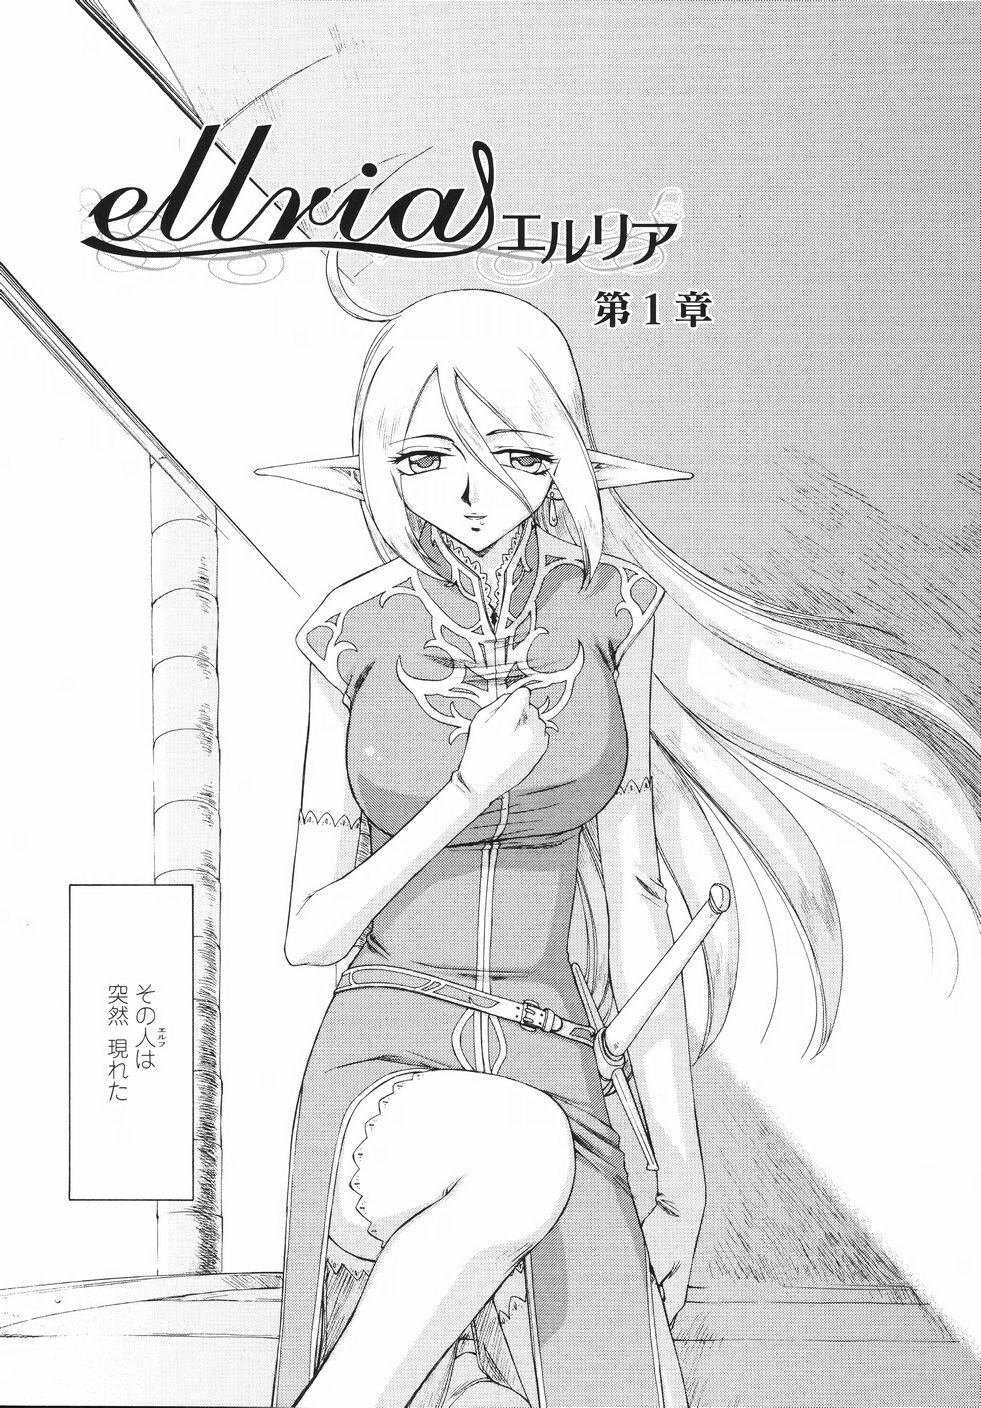 [Taira Hajime] Eruria page 11 full